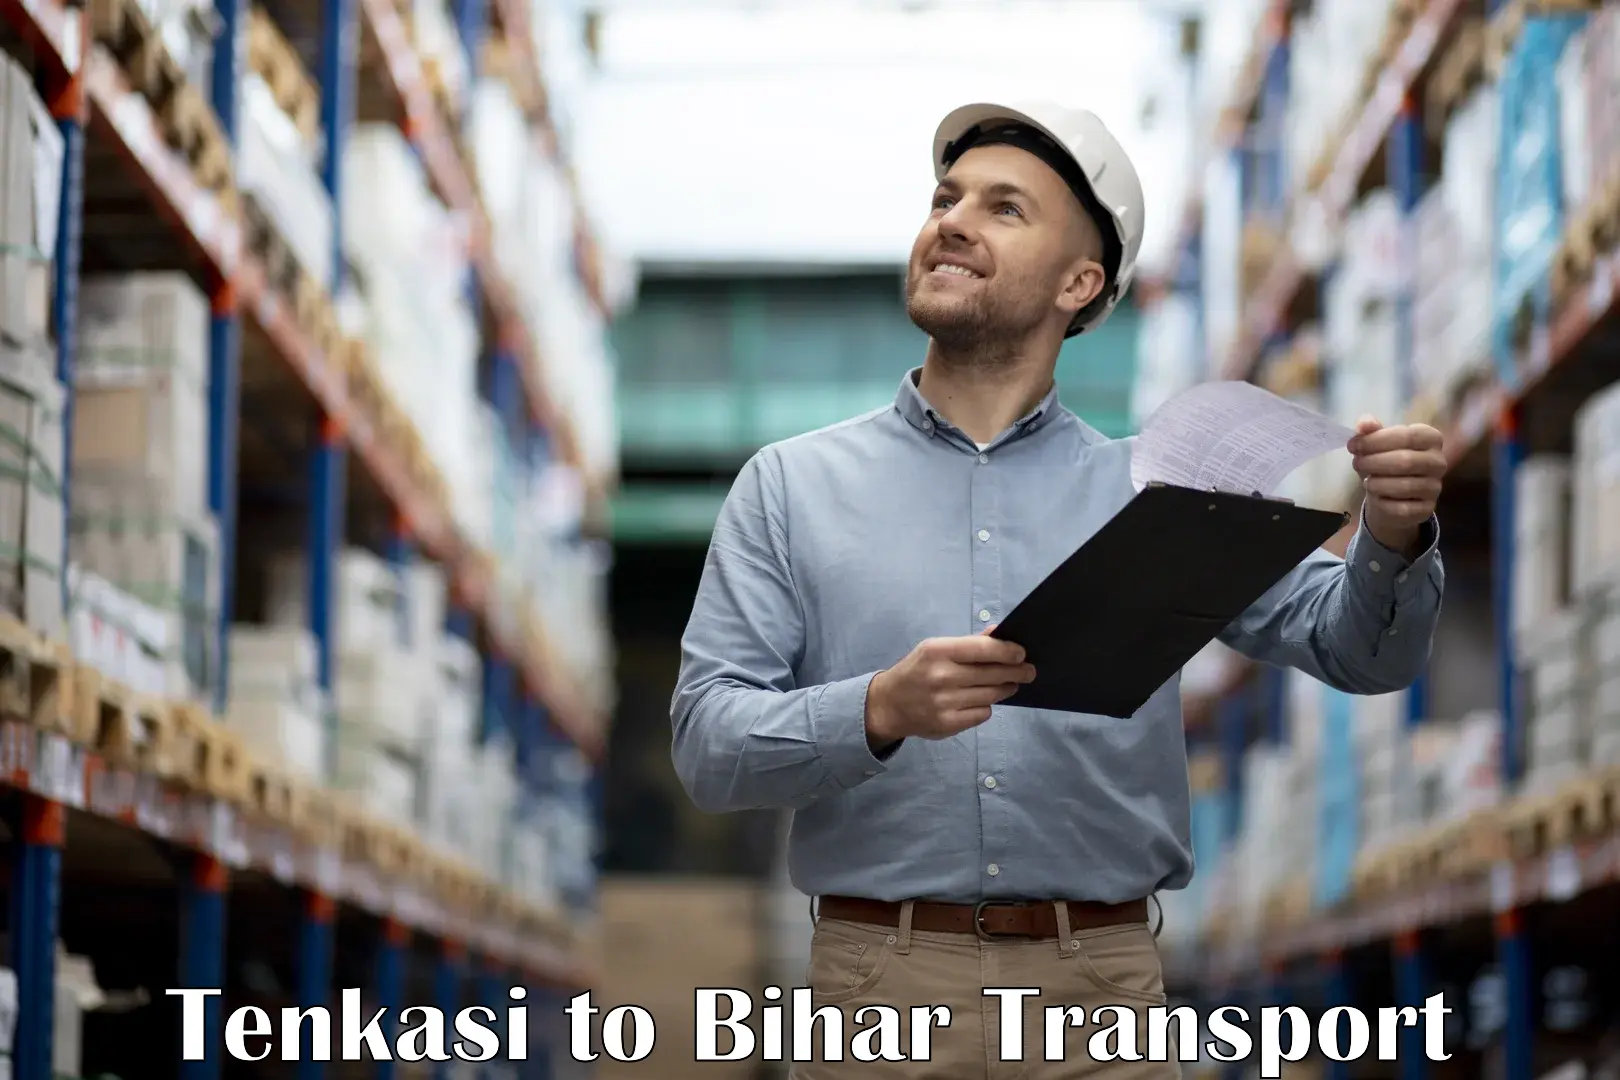 International cargo transportation services Tenkasi to Sonbarsa